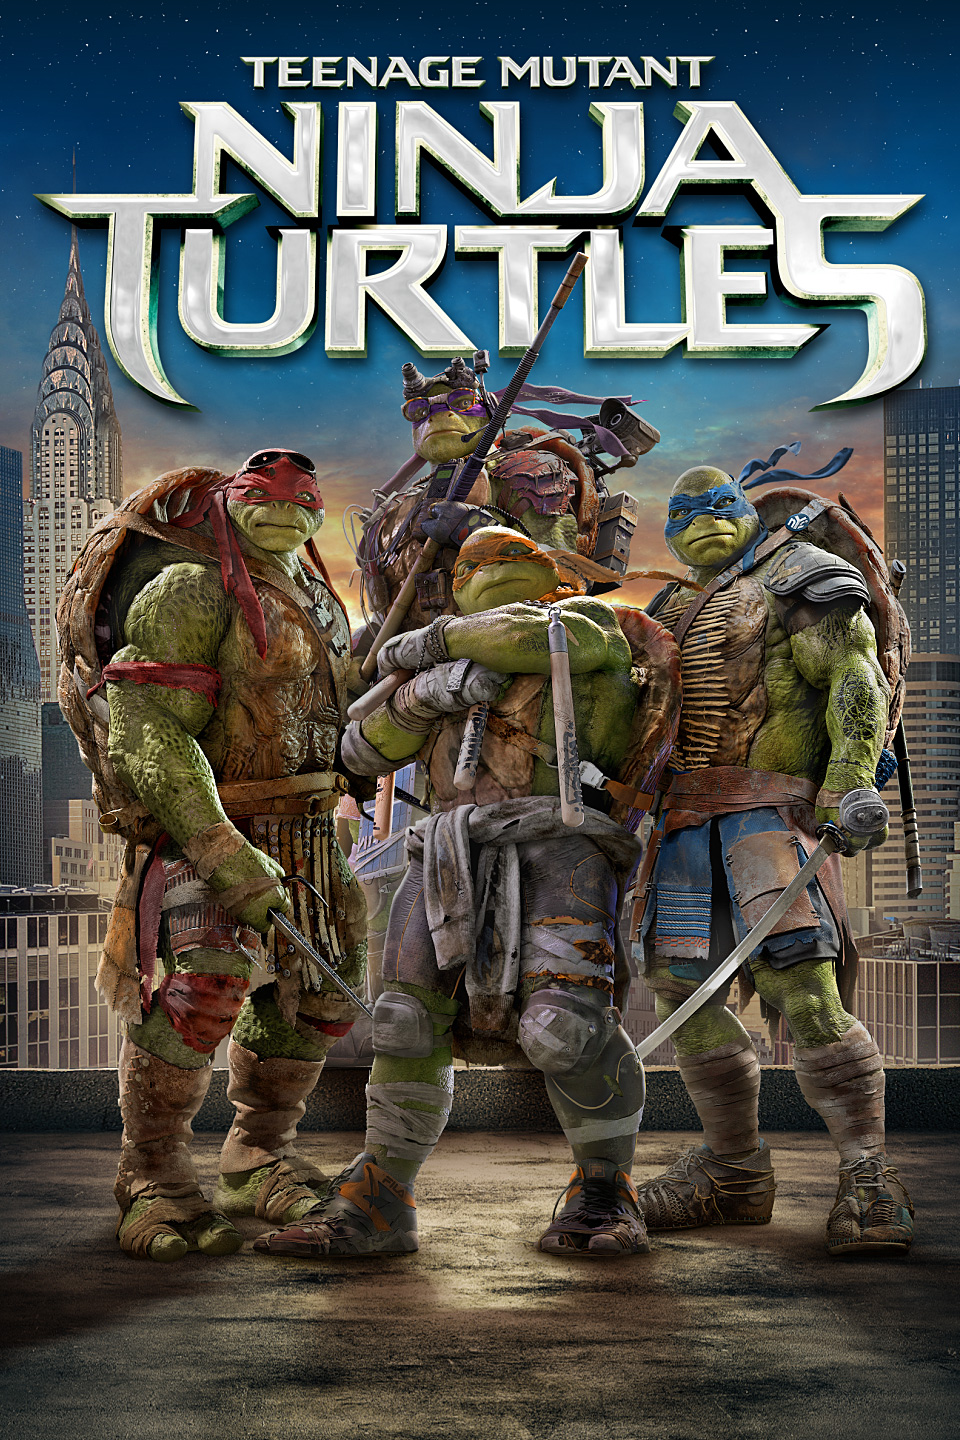 HQ Teenage Mutant Ninja Turtles (2014) Wallpapers | File 776.92Kb